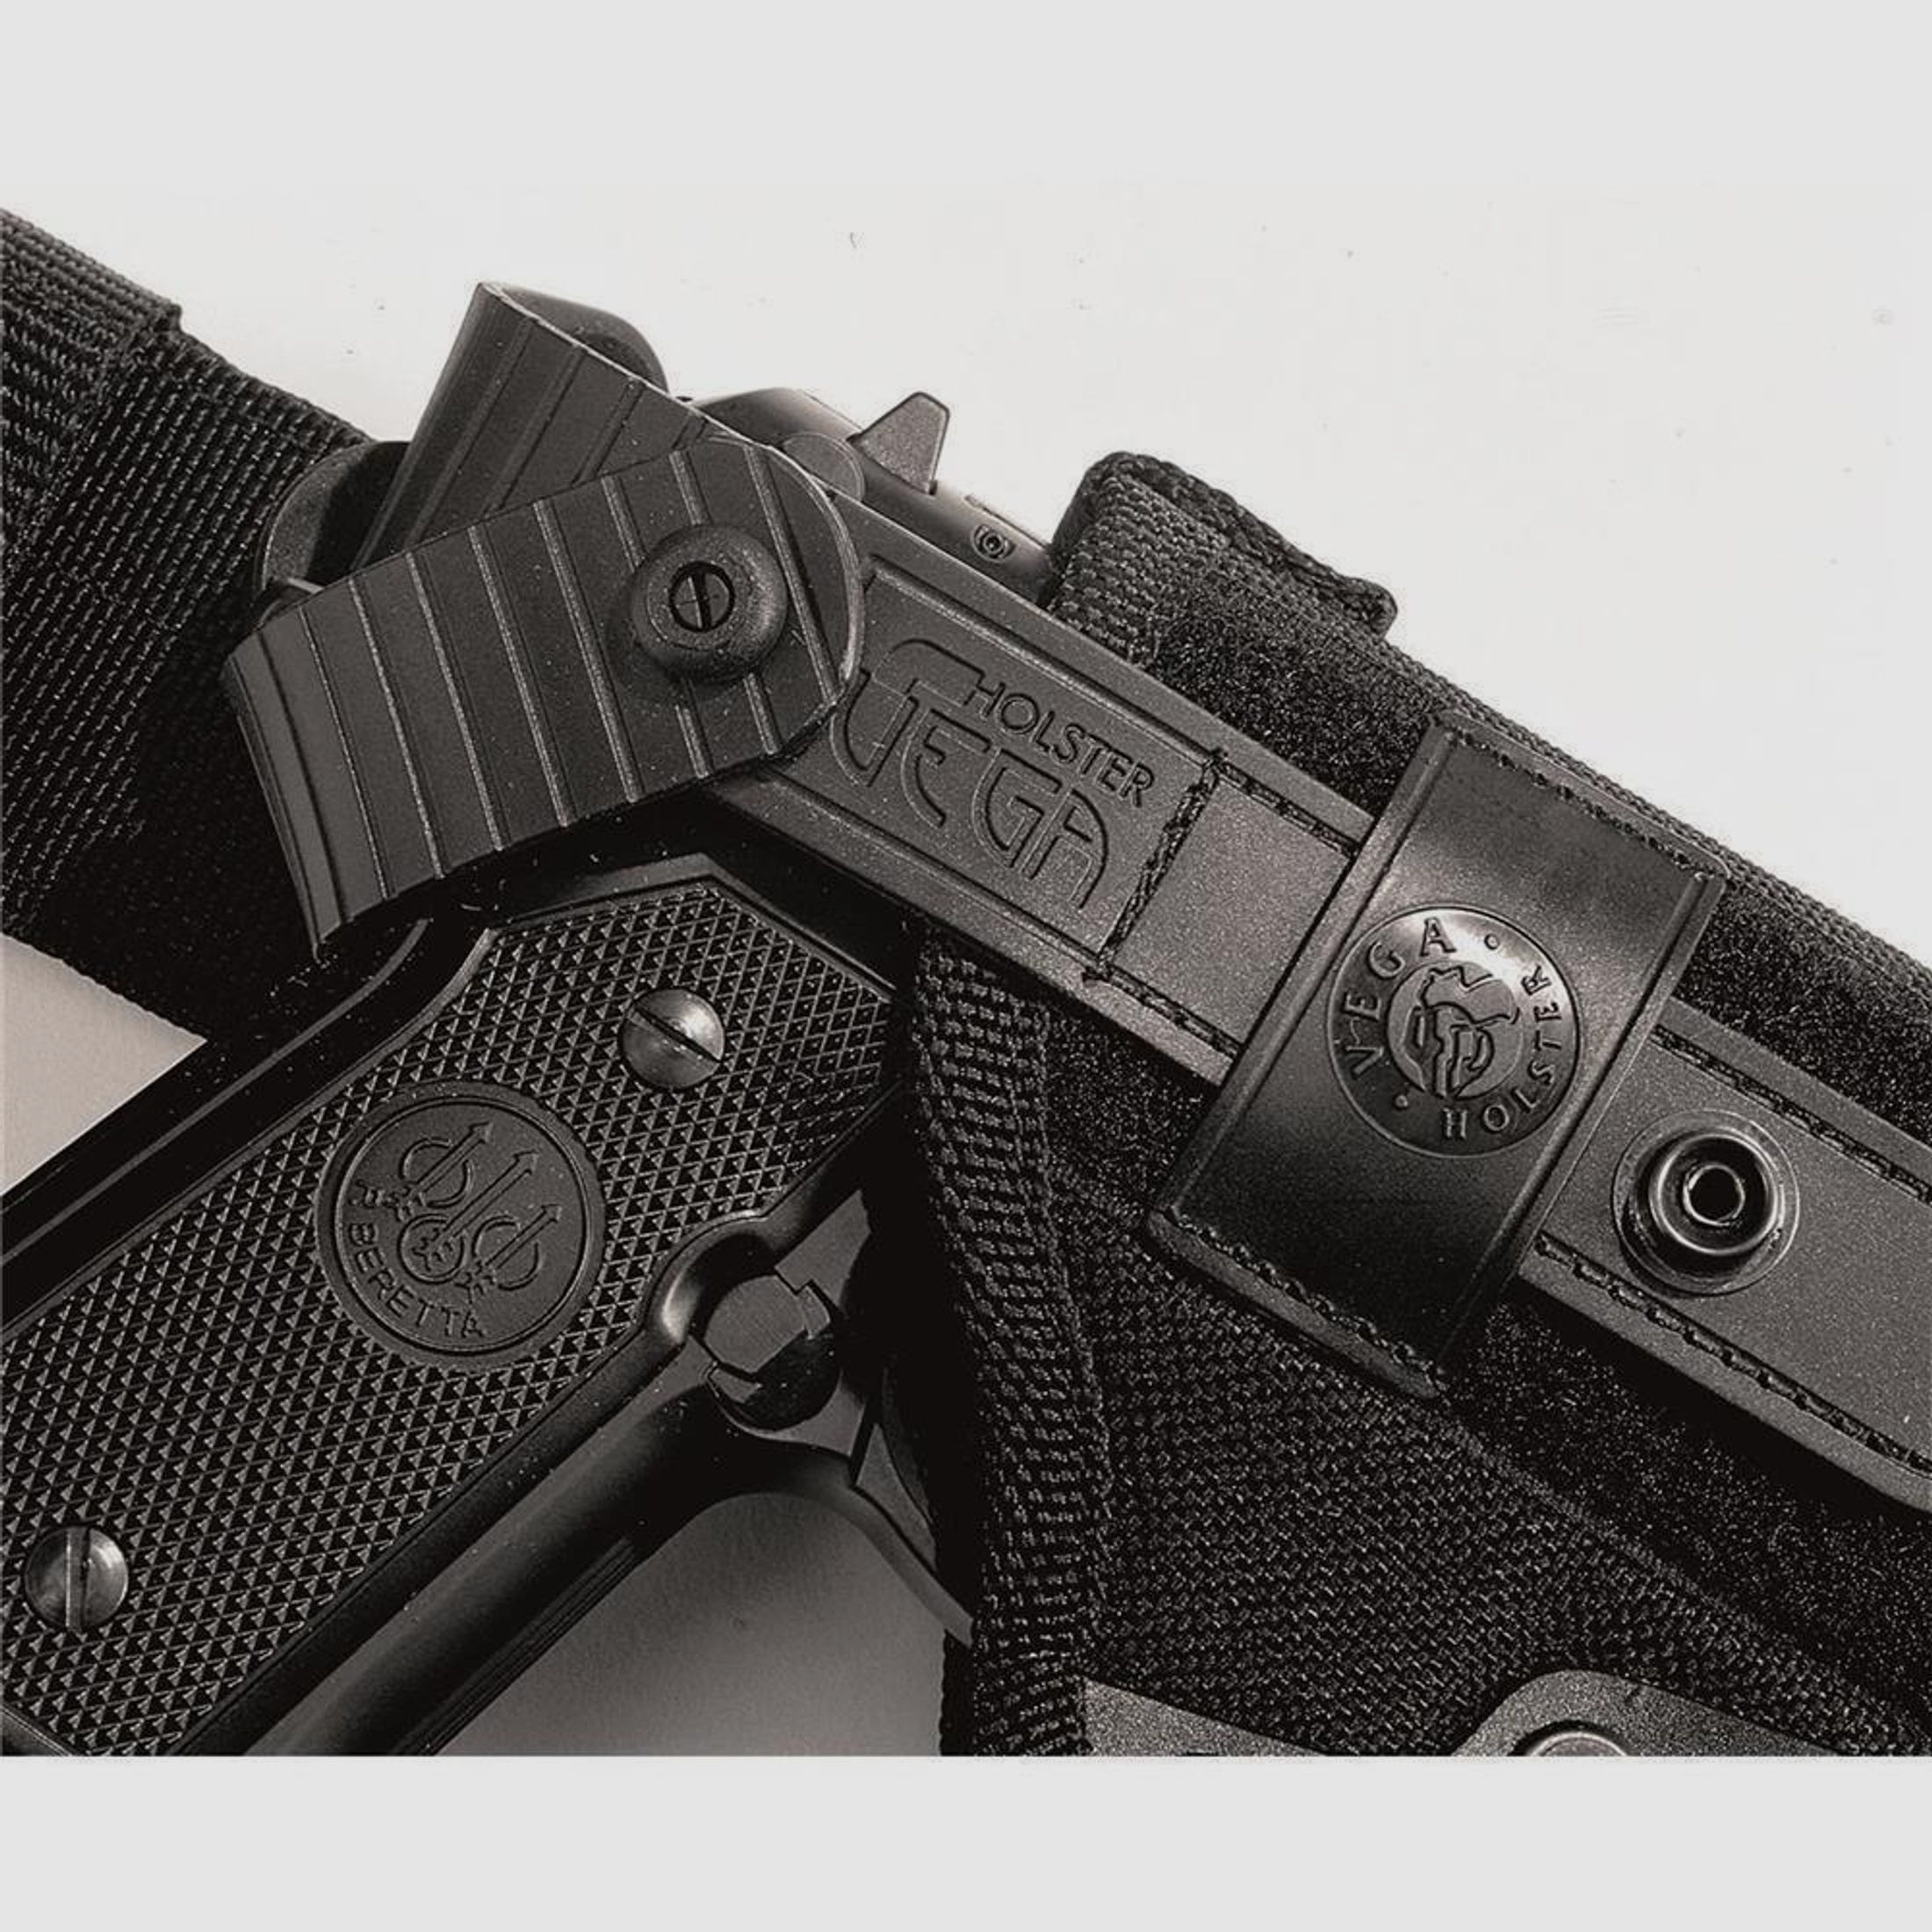 Taktisches Oberschenkelholster mit doppelter Sicherungslasche Glock 20/21/29/30/36, H&K USP/P30L, SFP9-VP9, CZ P07, Walther P99/PPQ,Beretta APX Schwarz Linkshänder